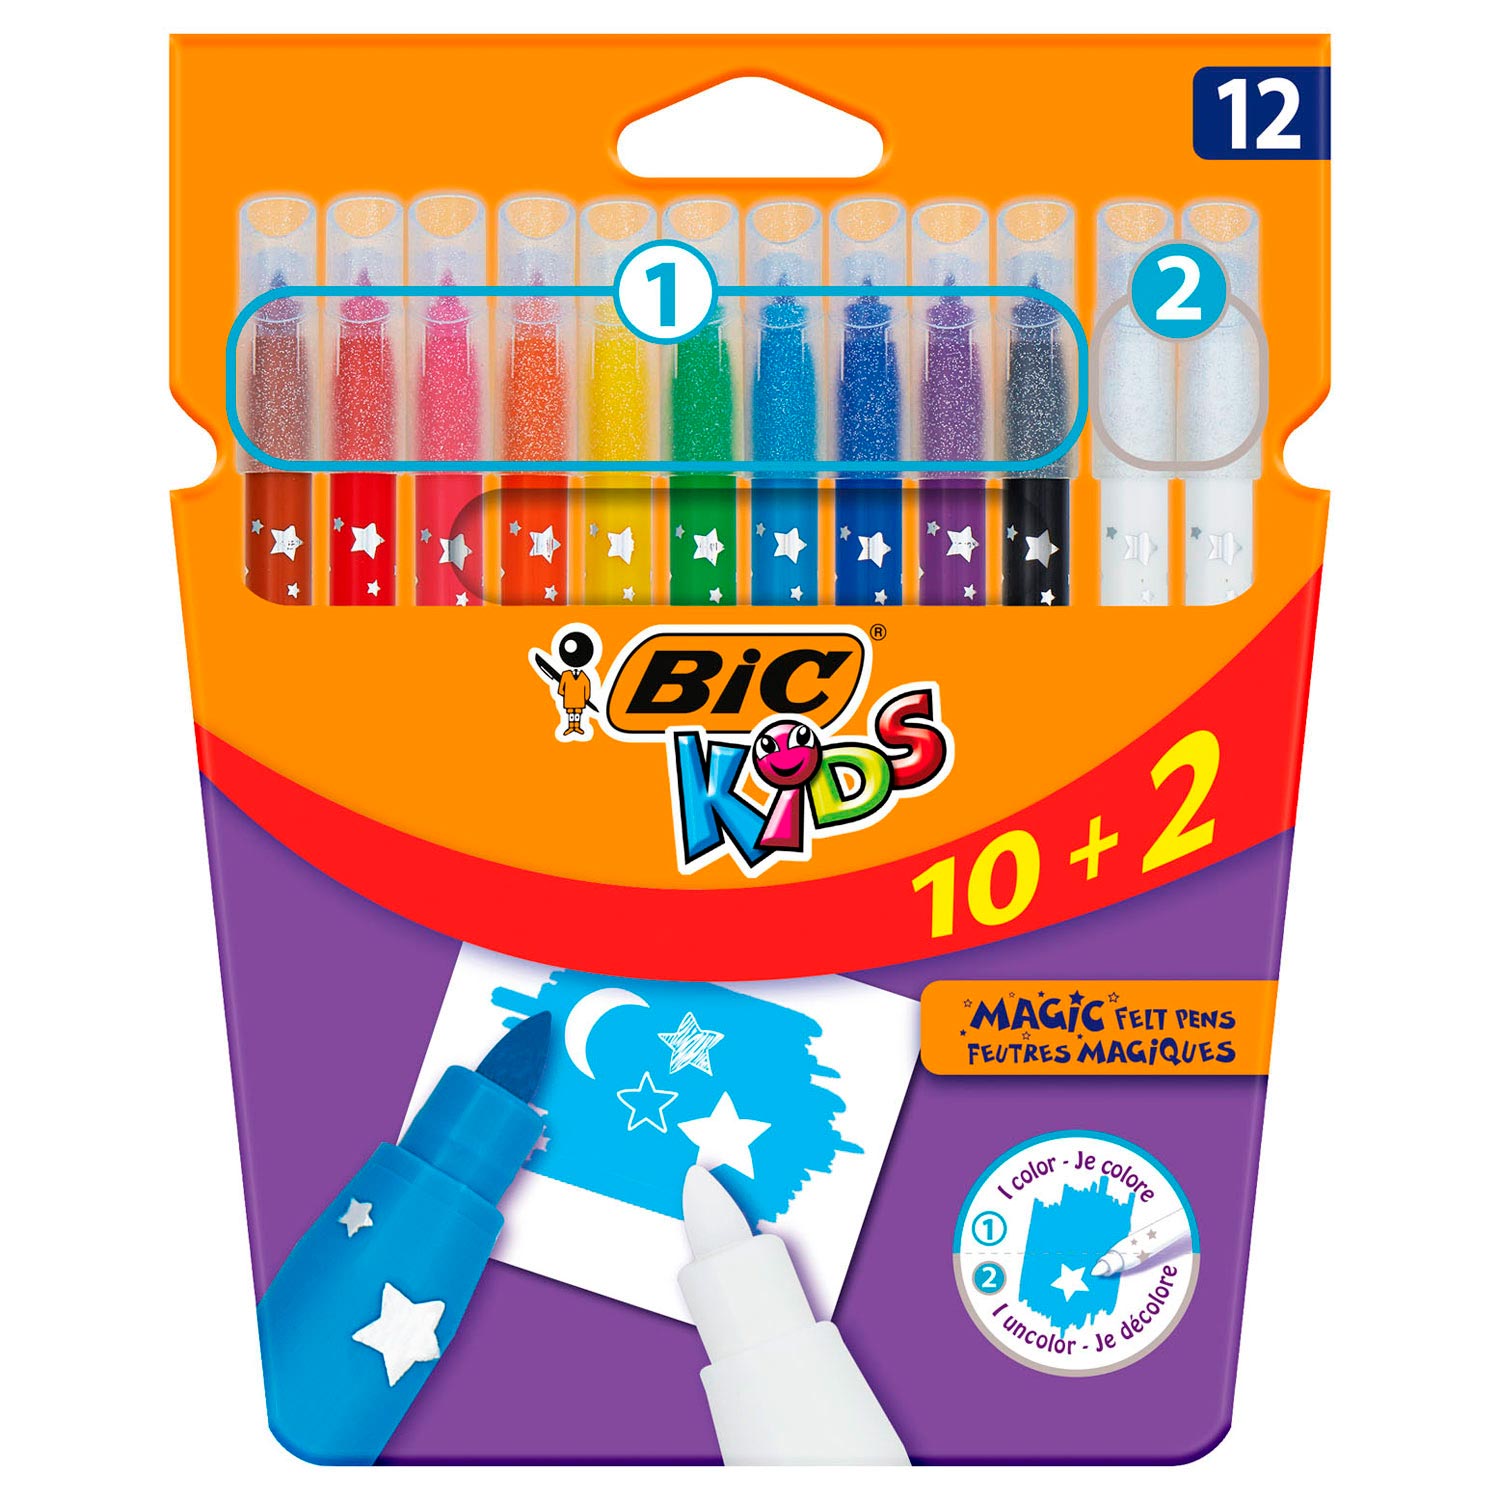 BIC Kids Coloring & Erasing, 10 + 2 gratis